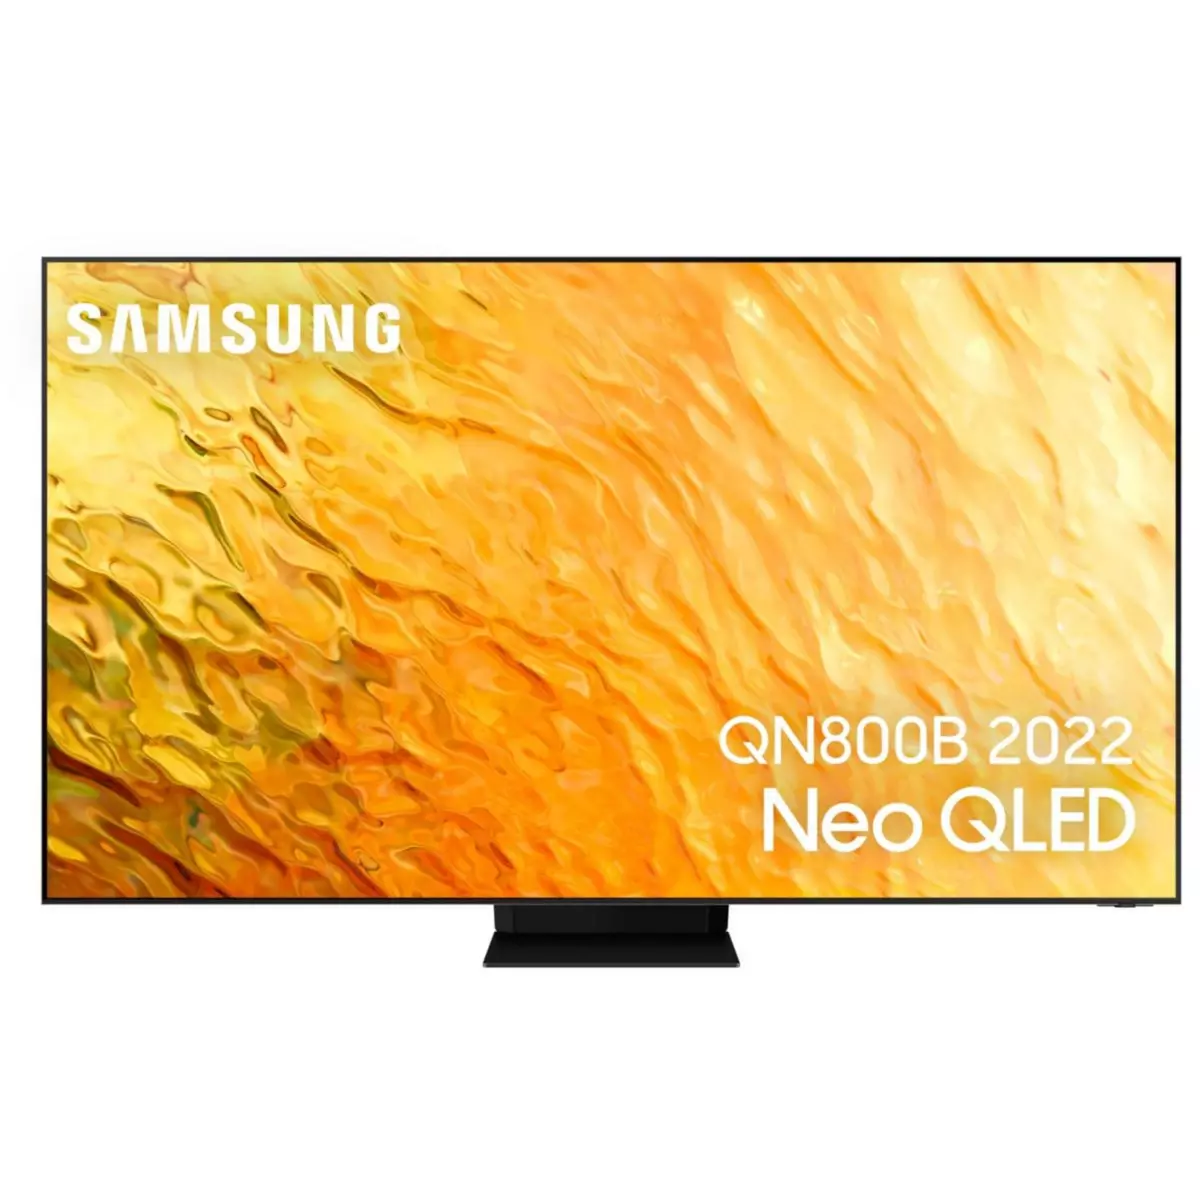 Samsung TV QLED NeoQLED QE75QN800B 2022